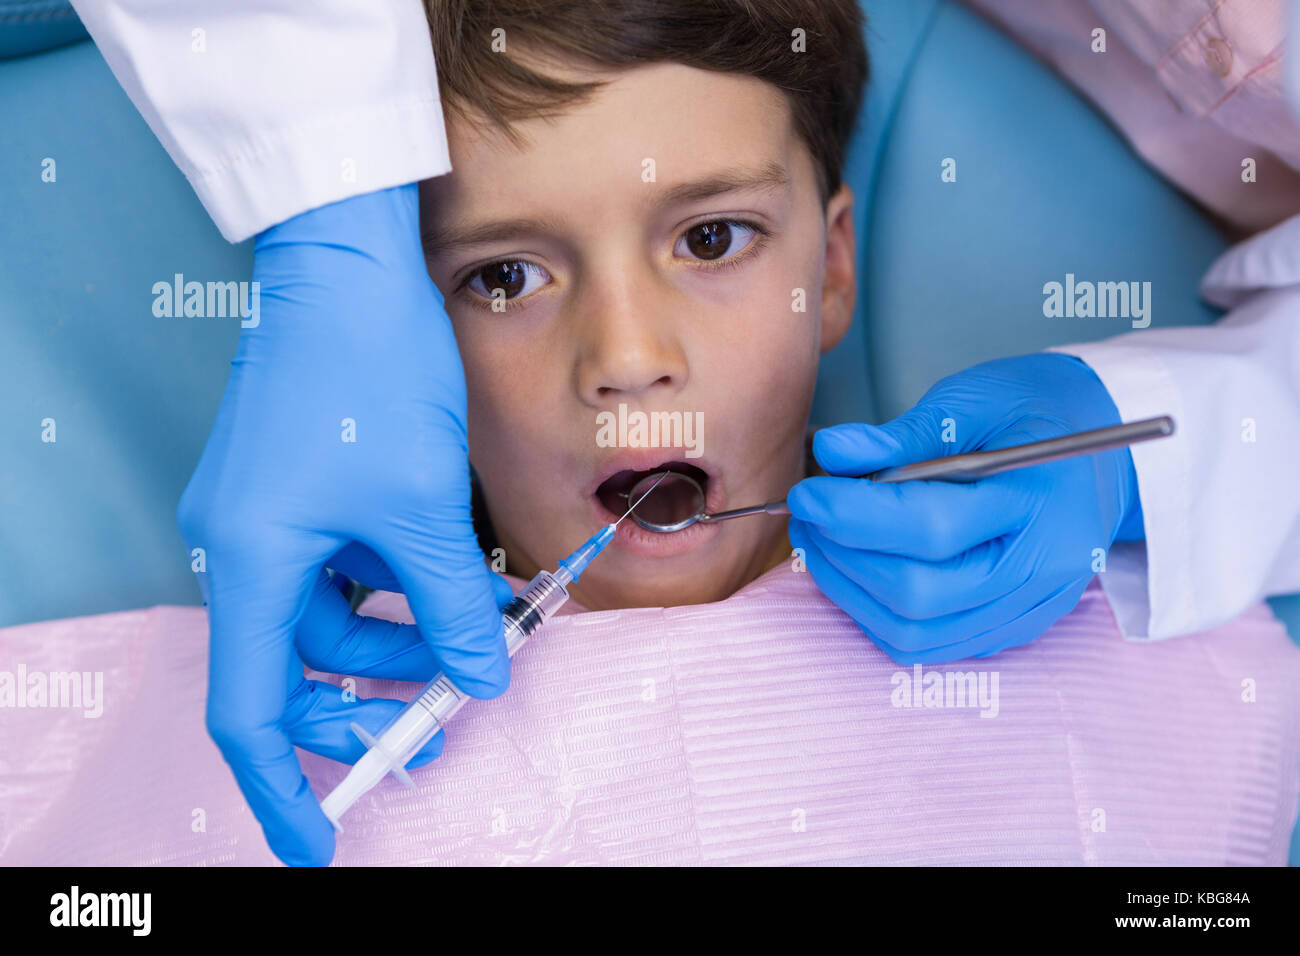 Portrait de dentiste holding syringe, tout en traitant les garçon à la clinique médicale Banque D'Images